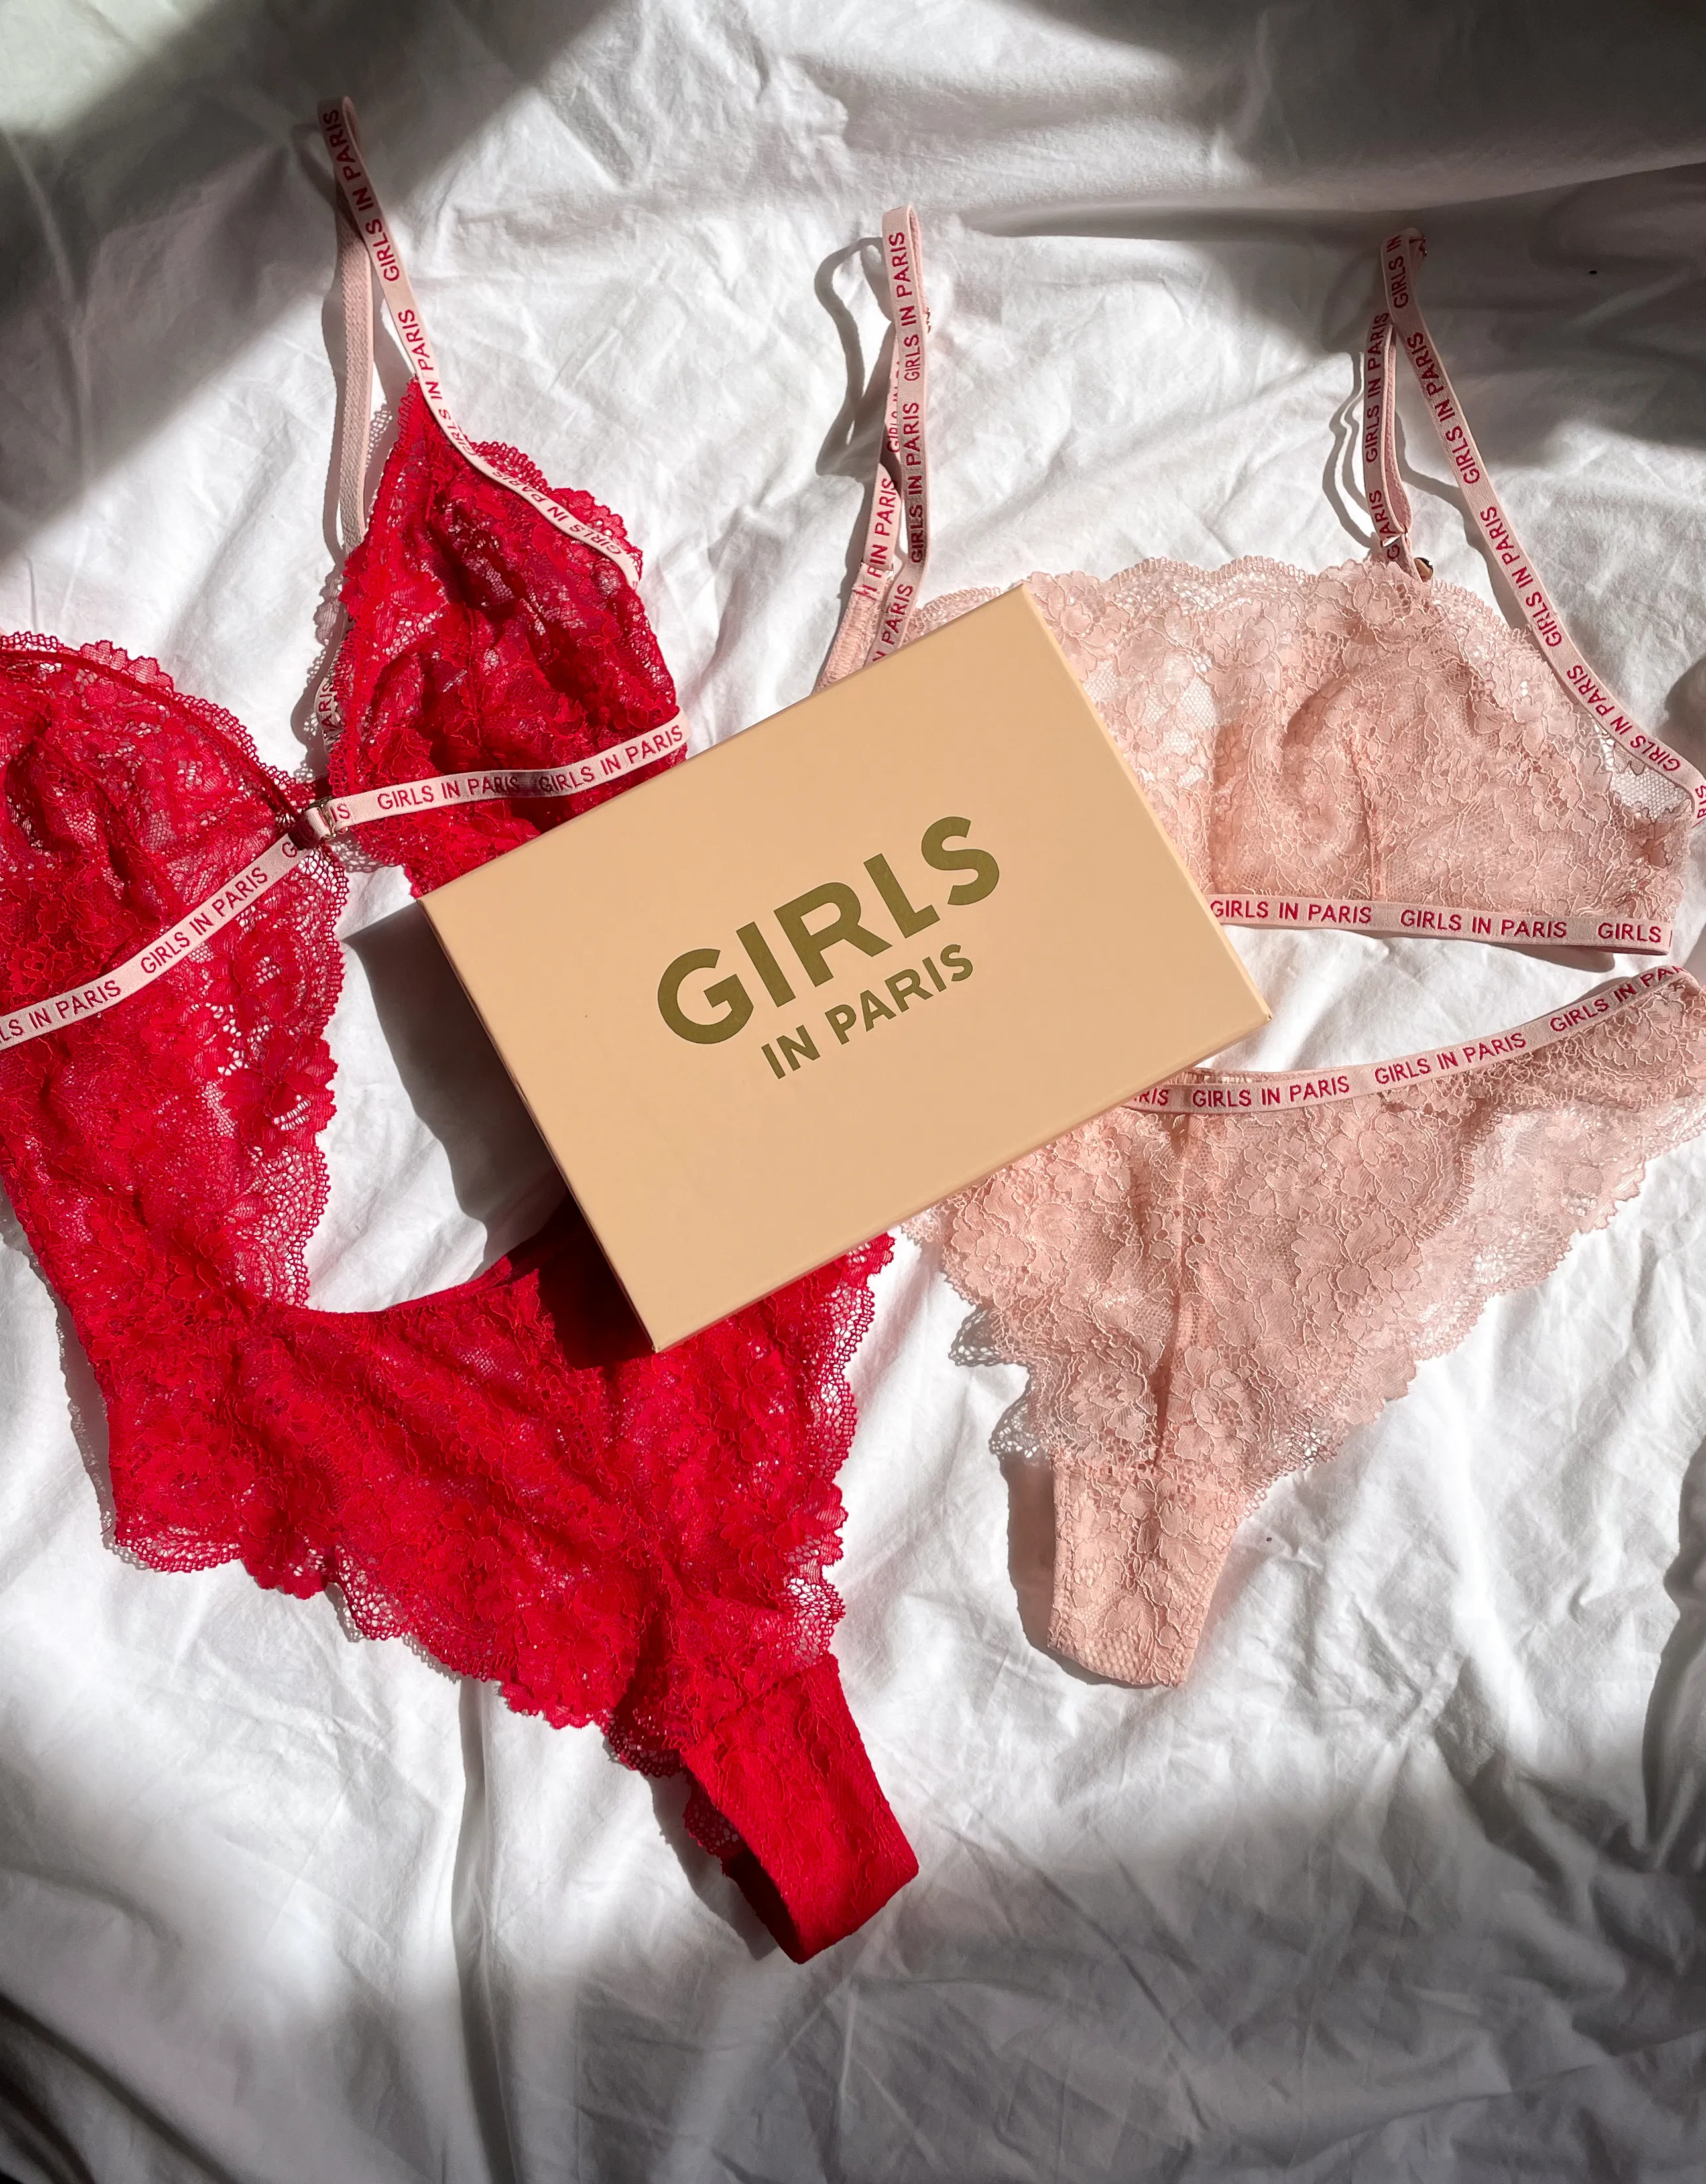 https://www.girlsinparis.com/images/lingerie/soutien-gorge-avec-armatures-melrose_5522_01_a.jpg